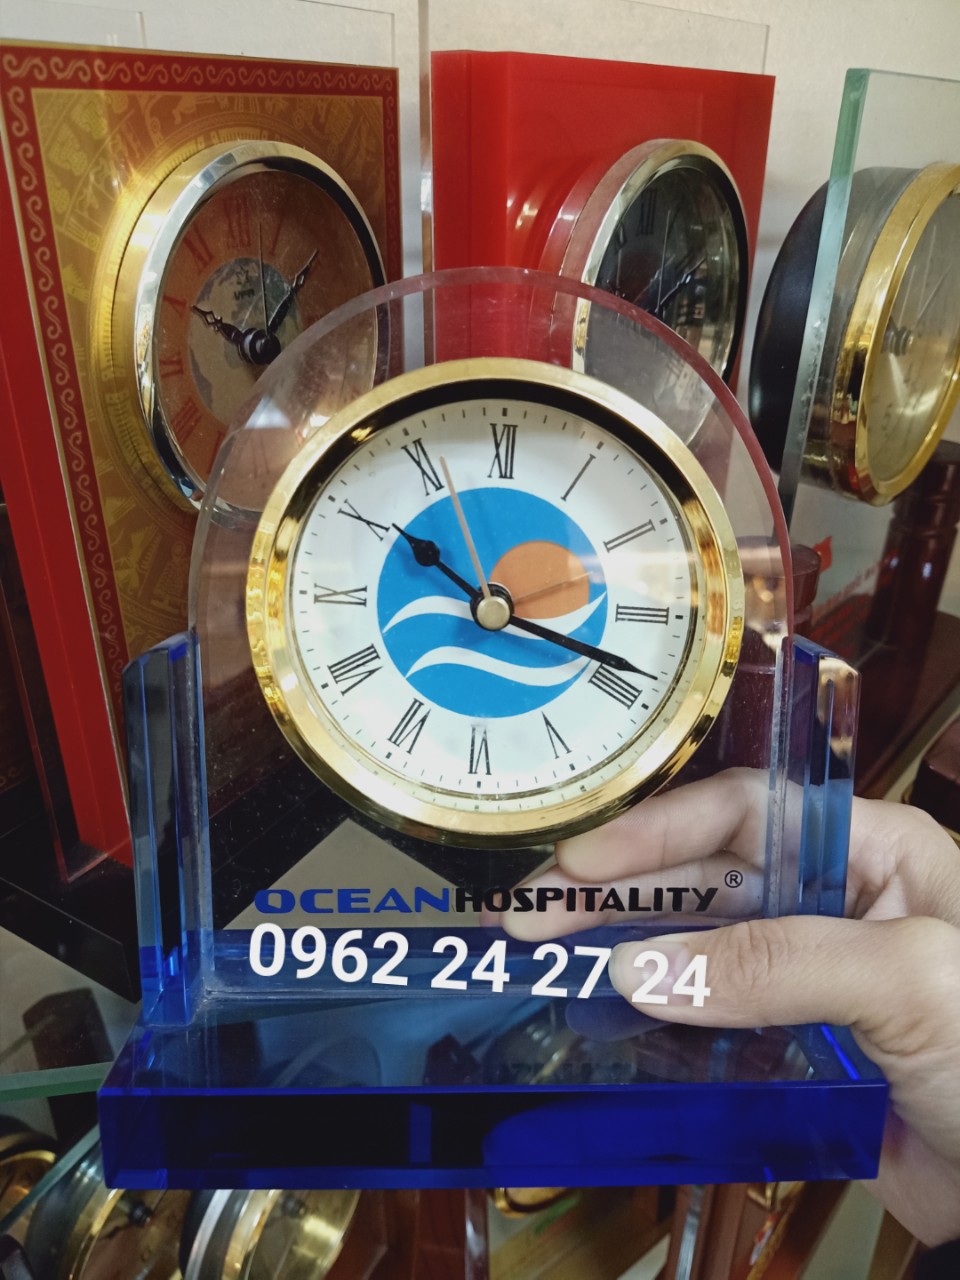 Cơ sở chuyên cung cấp đồng hồ kỷ niệm sinh nhật công ty, bán đồng hồ làm quà tặng nhân viên tiêu biểu của năm